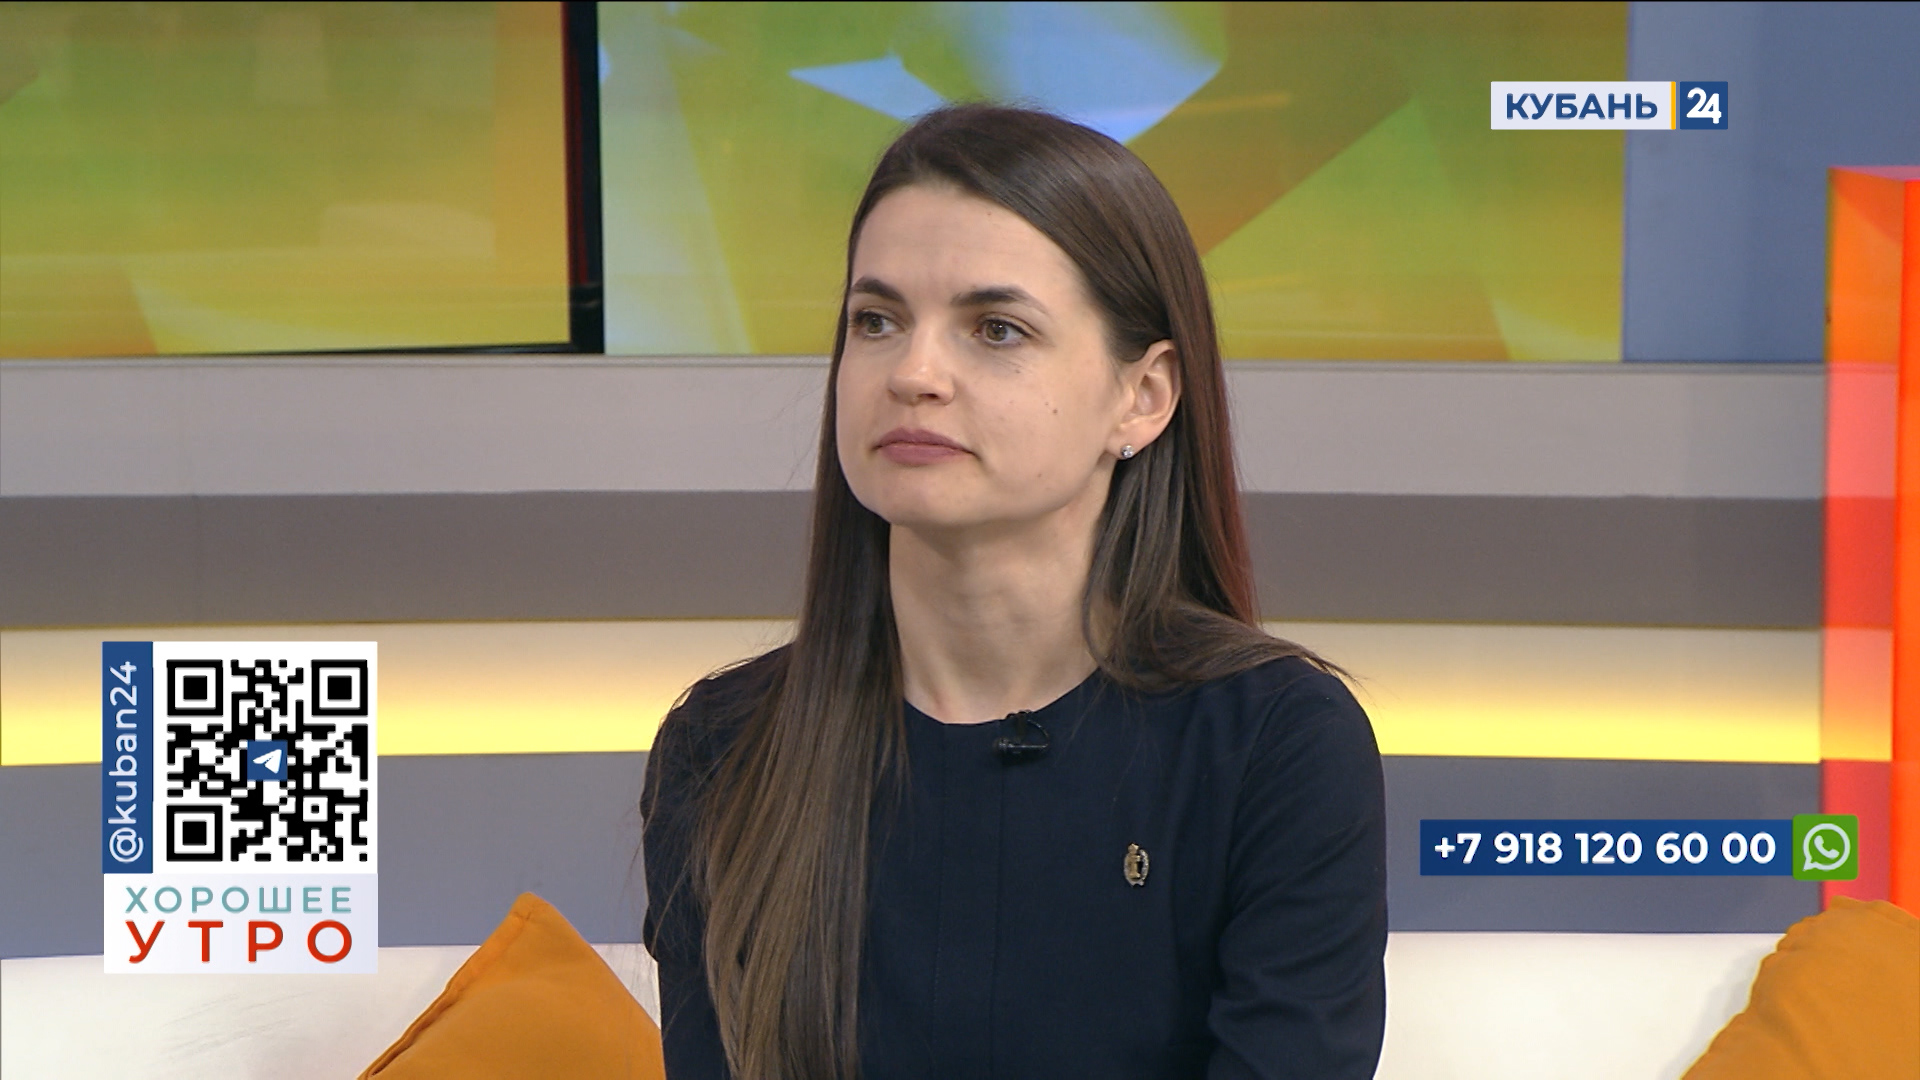 Анастасия Веретельникова: с юридической точки зрения гражданского брака нет